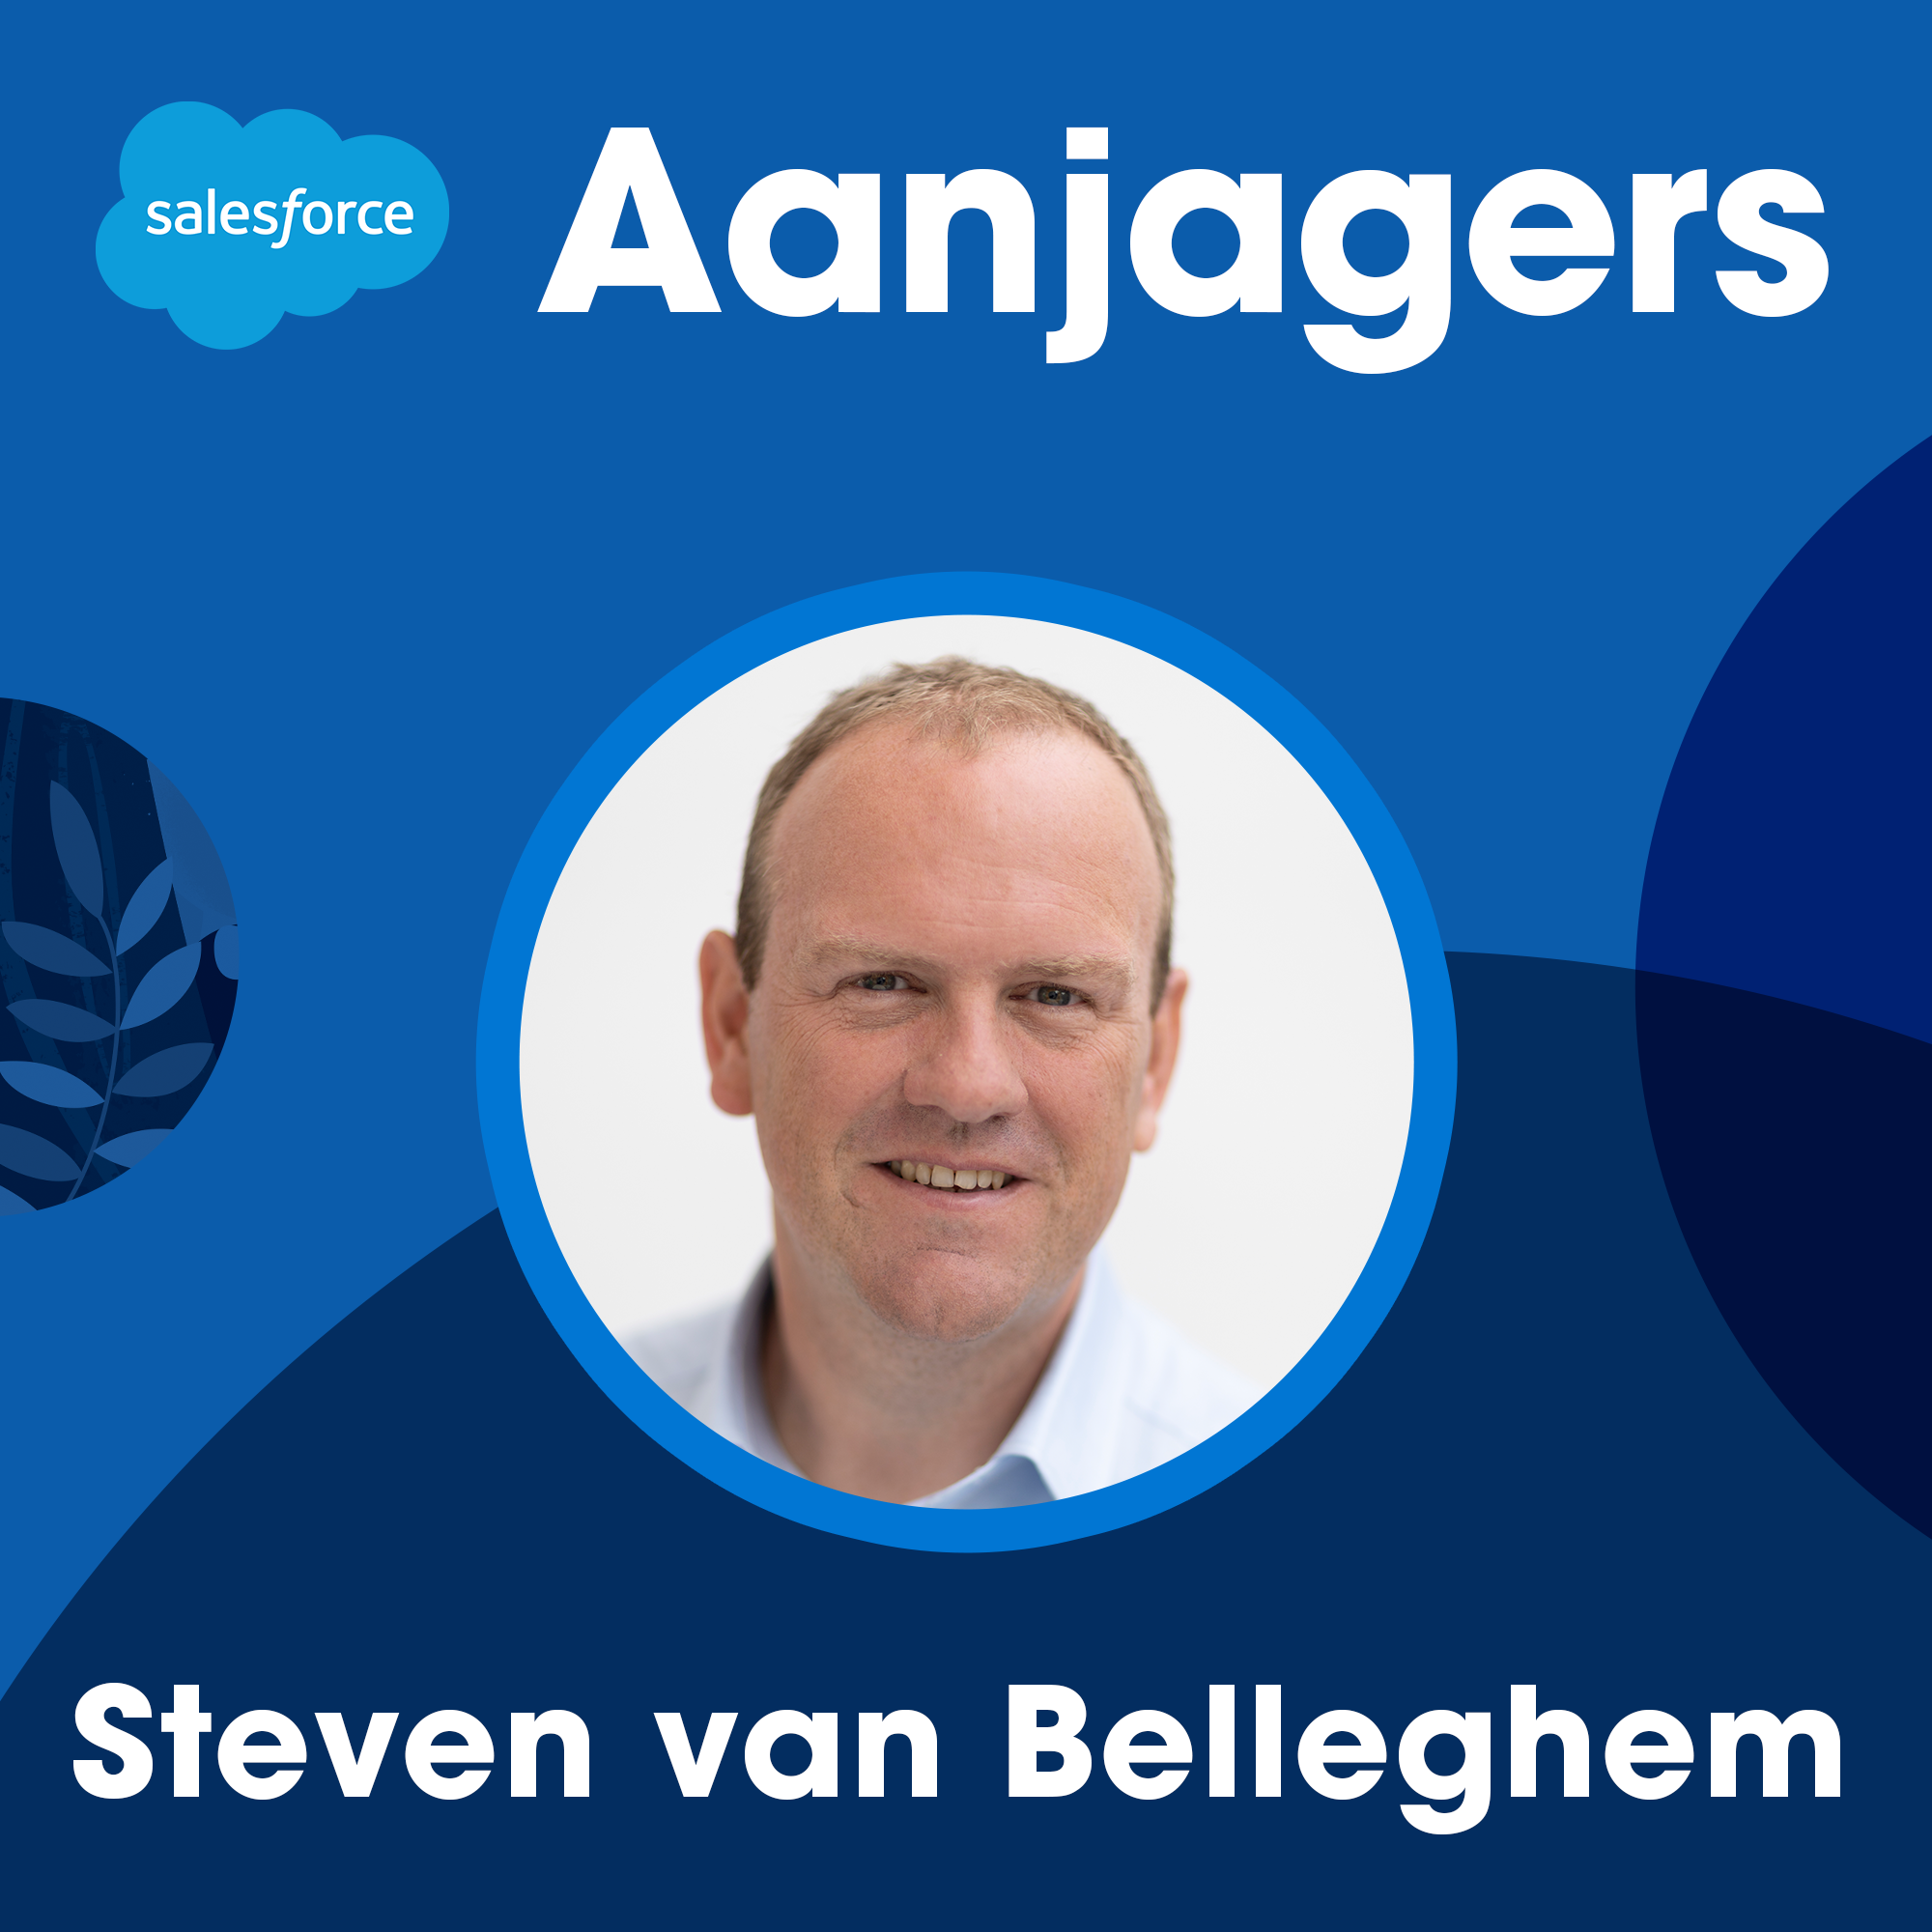 Steven van Belleghem: Van customer journey naar life journey